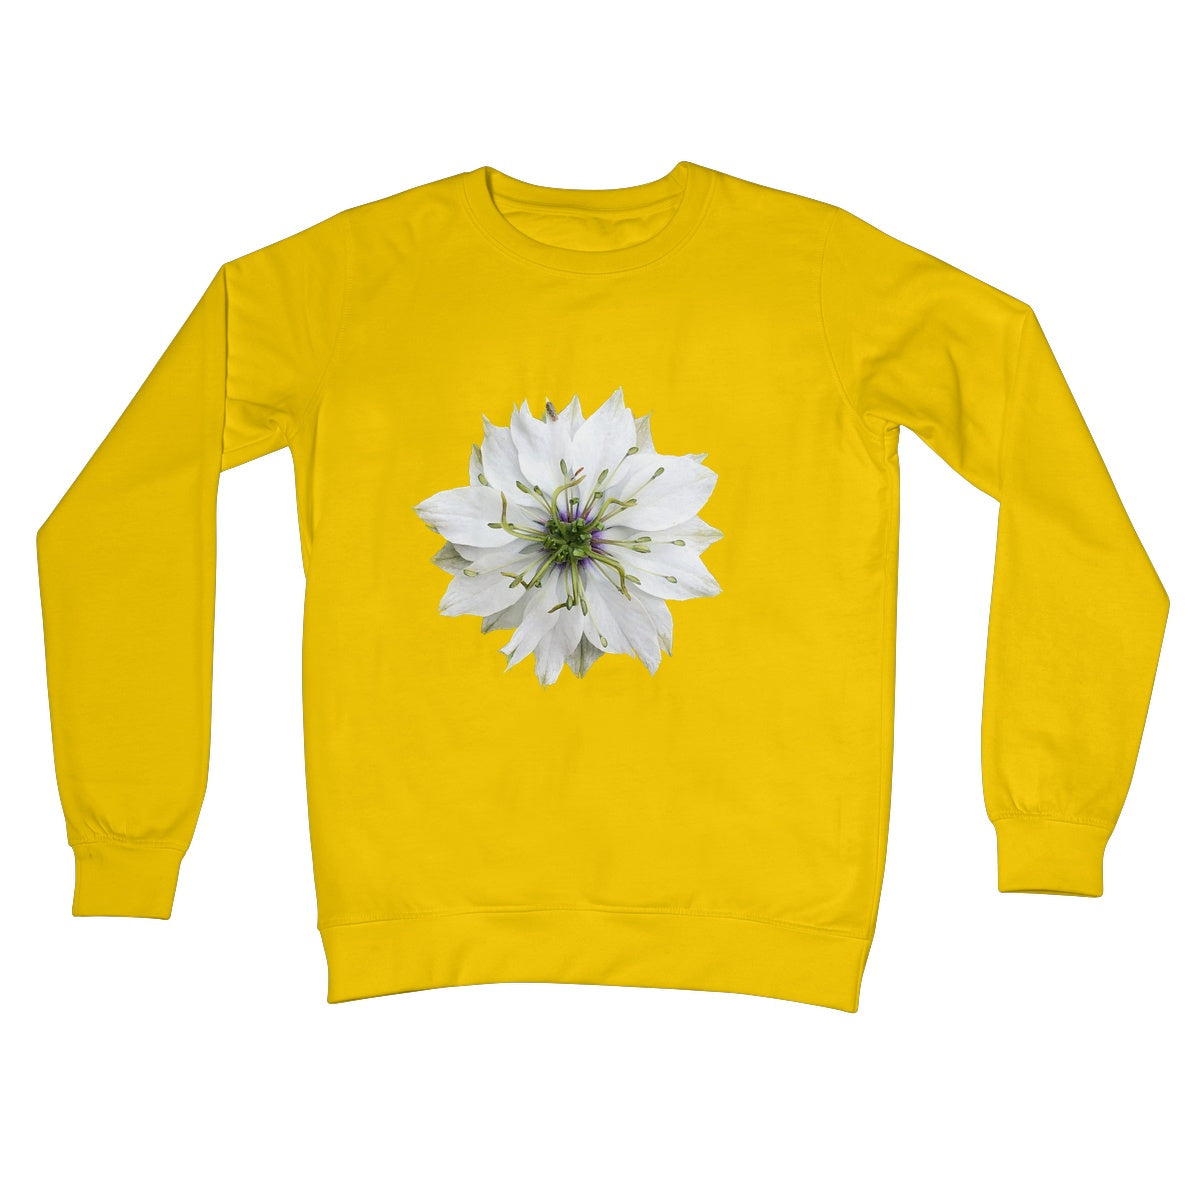 White Flower 'Nigella Love in the Mist' Crew Neck Sweatshirt